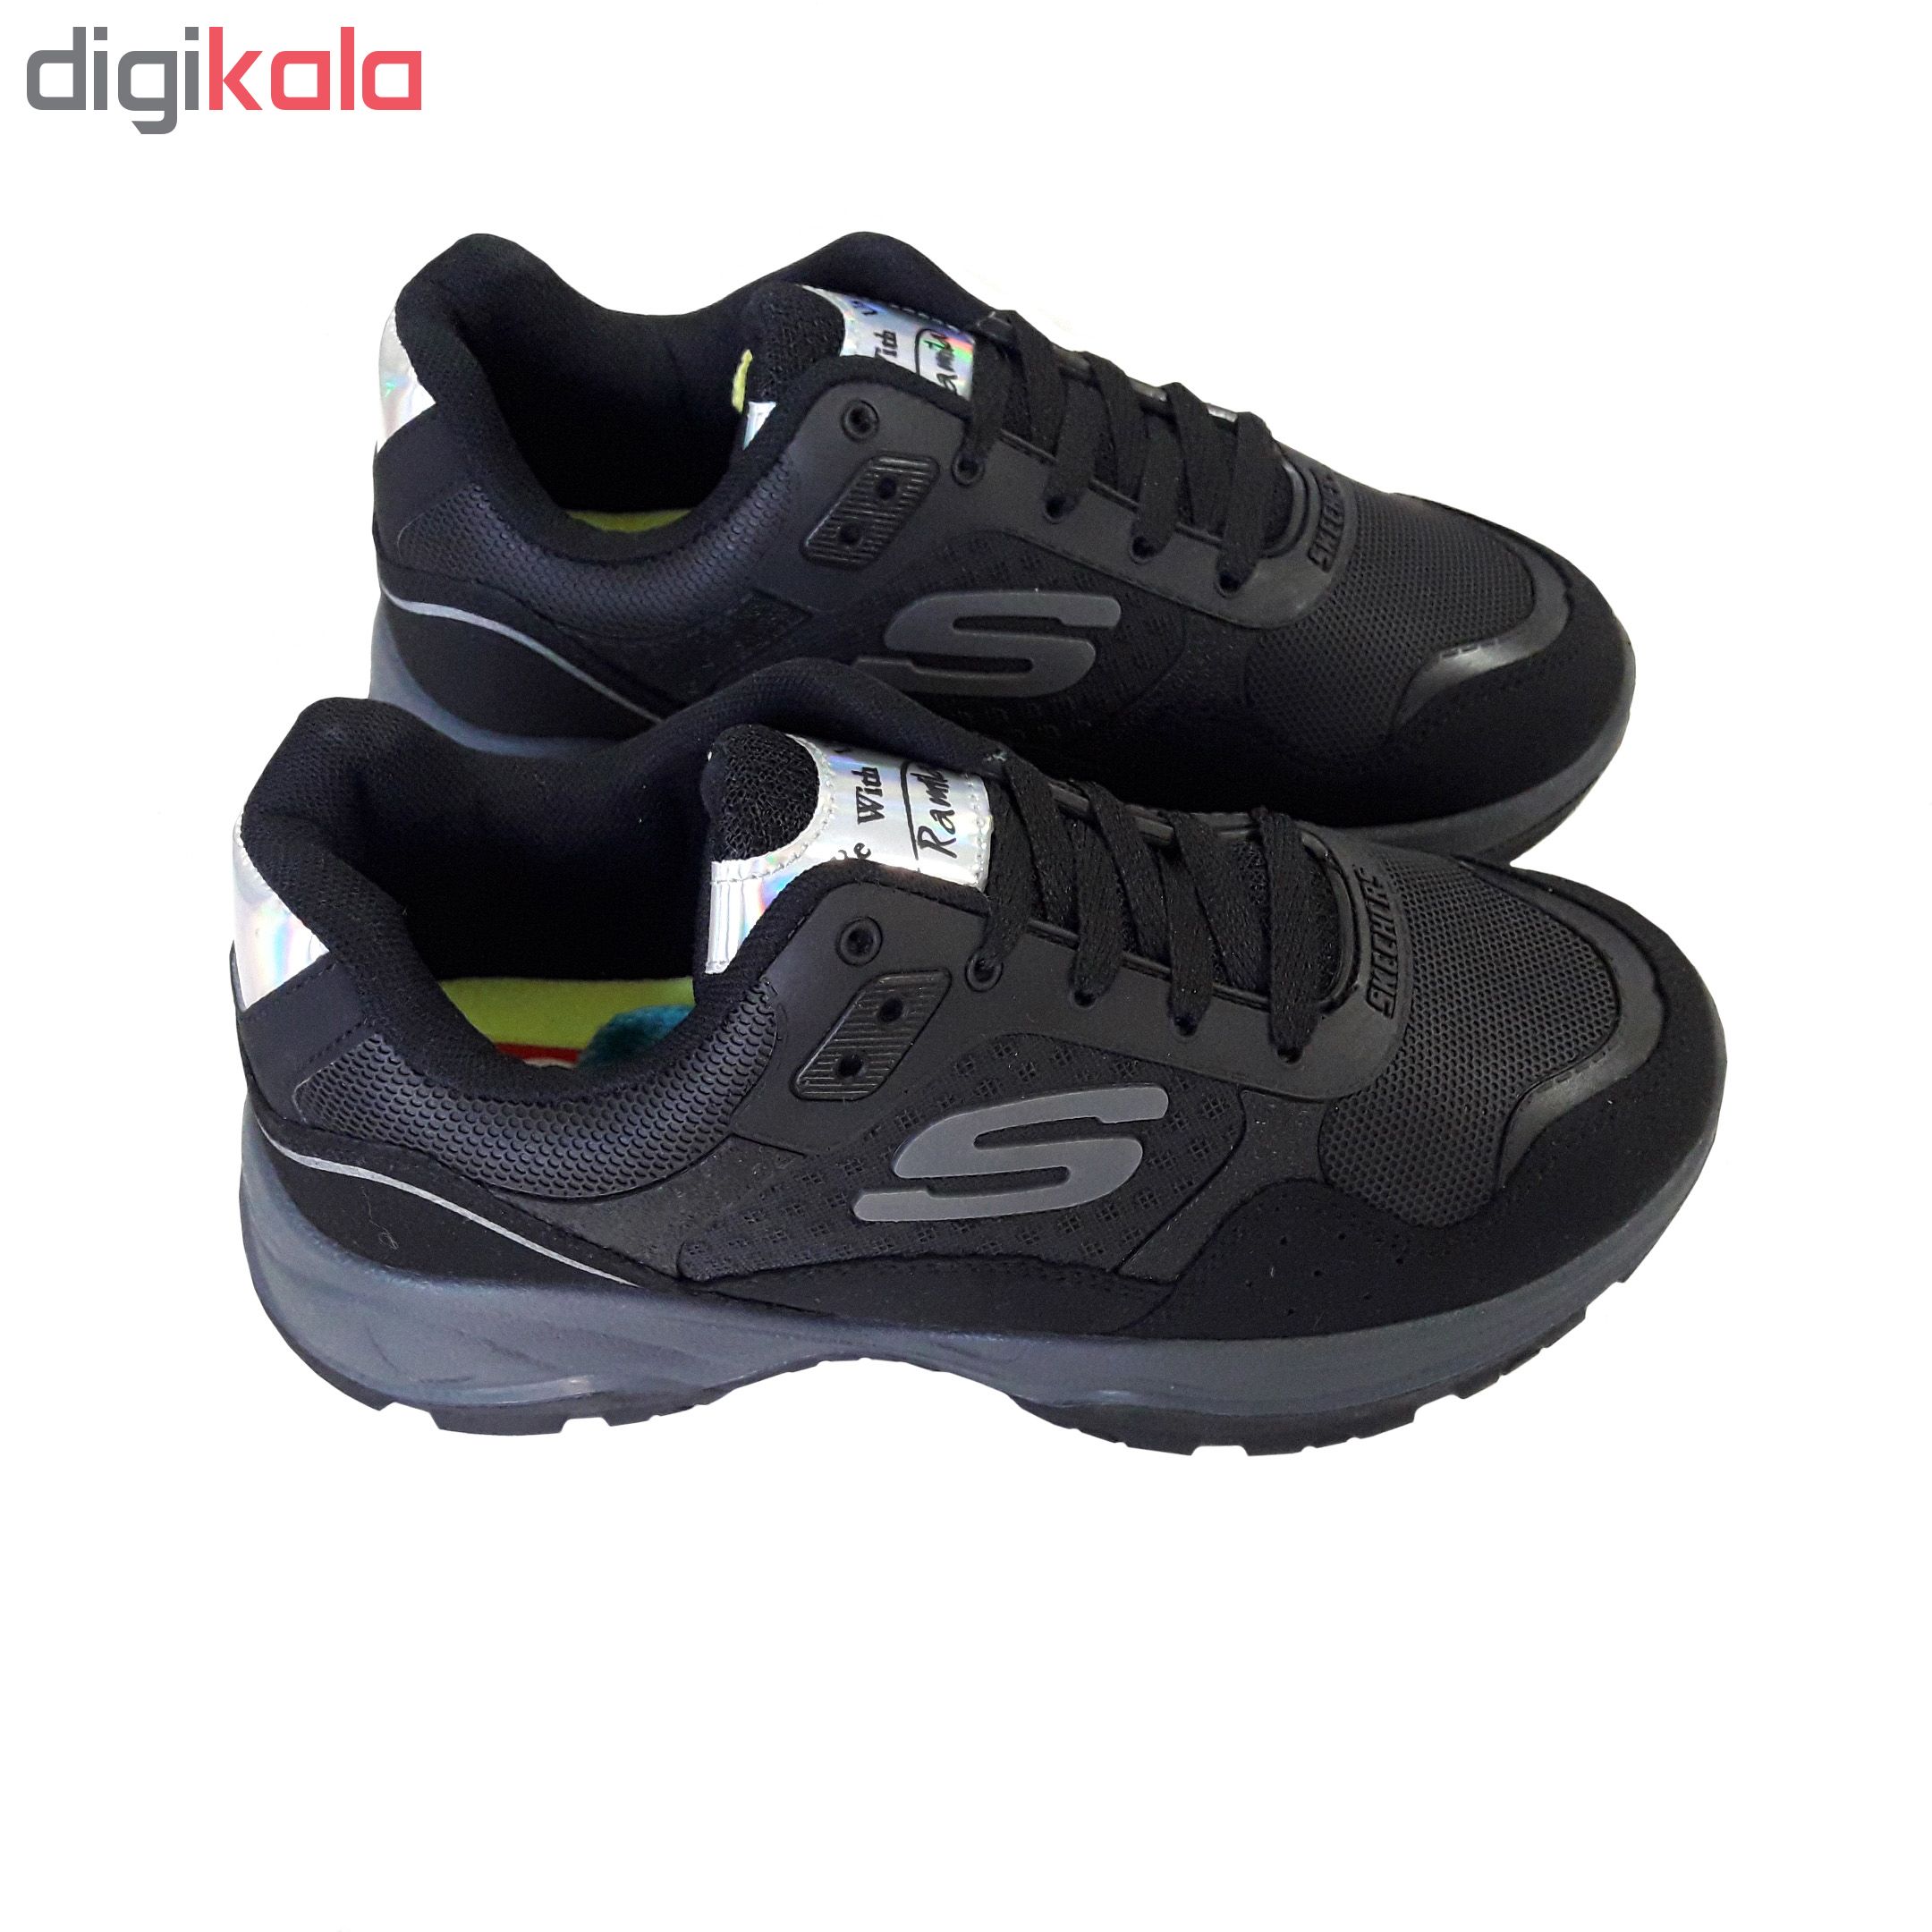  کفش مخصوص پیاده روی زنانه رامیلا کد 227